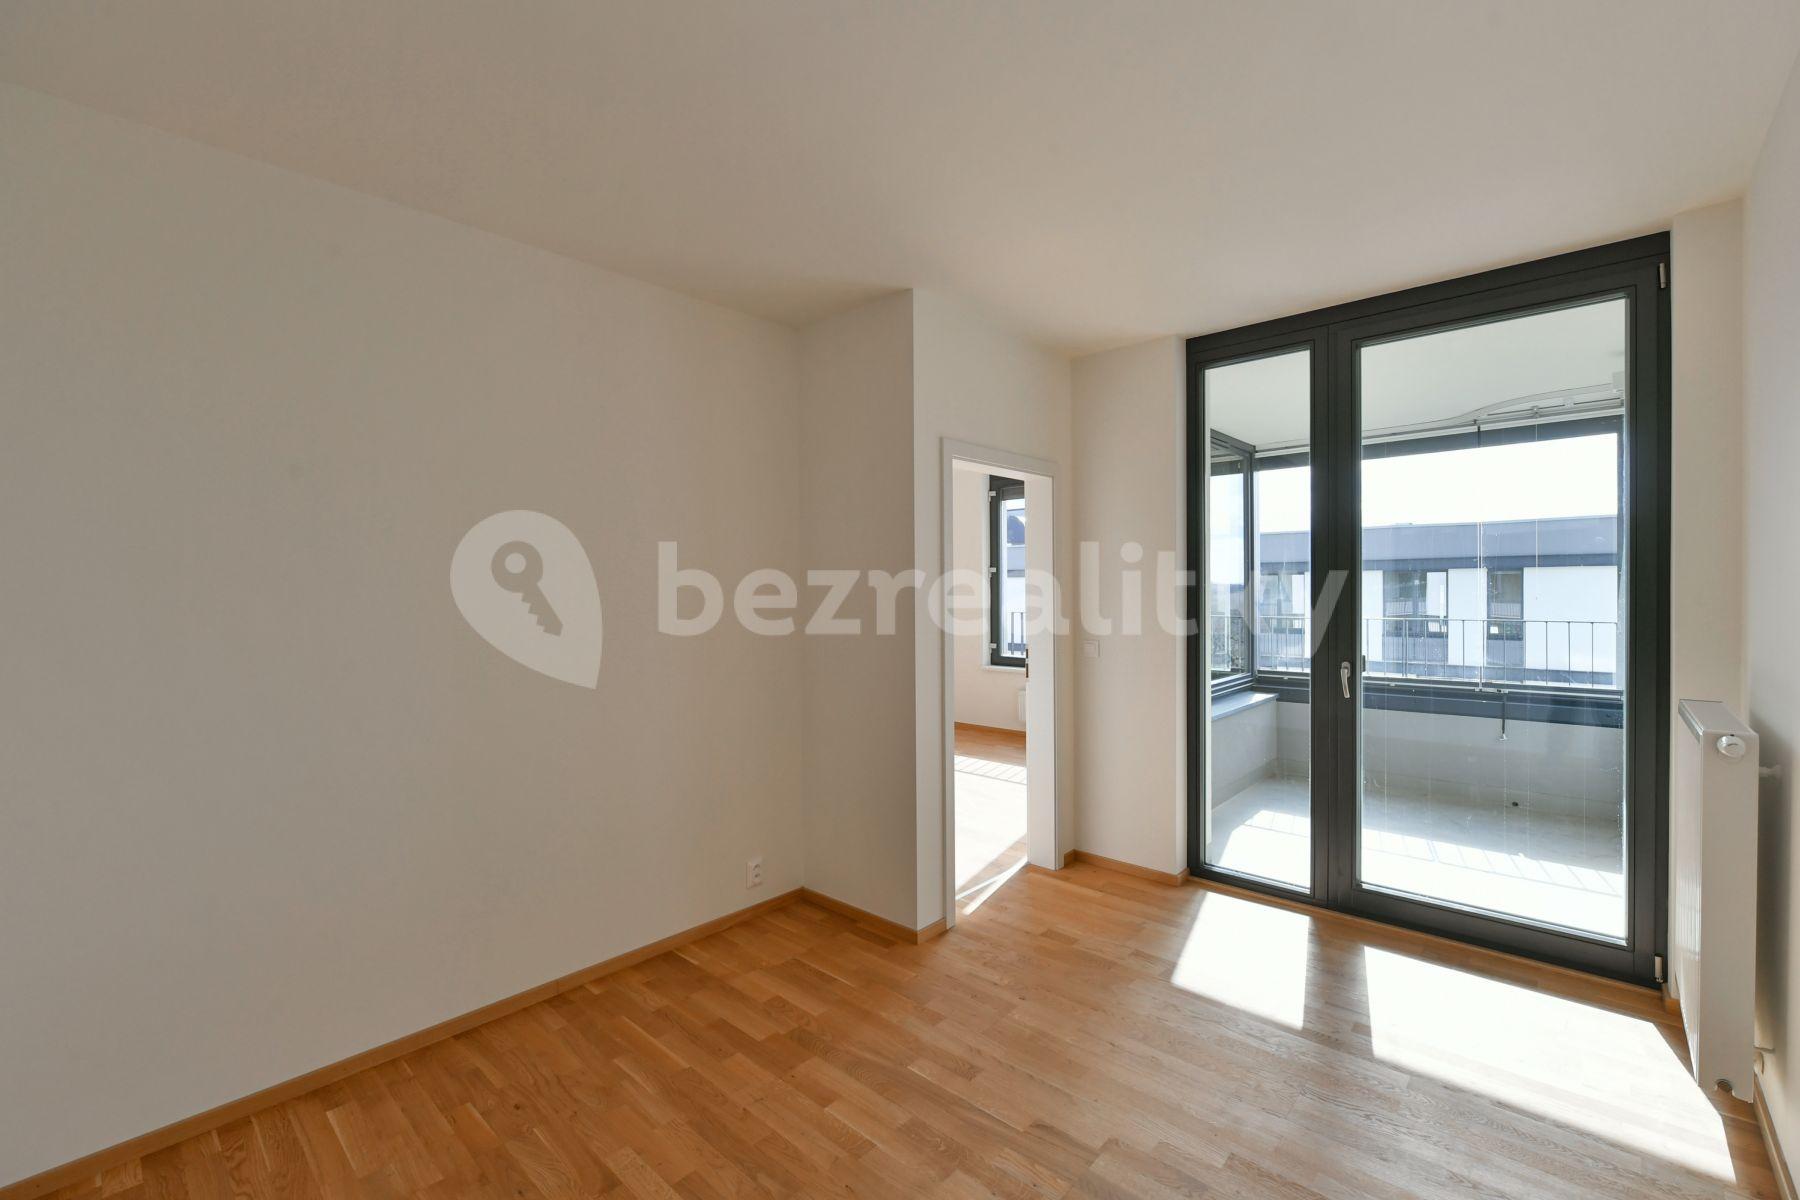 1 bedroom with open-plan kitchen flat to rent, 50 m², Střížkovská, Prague, Prague